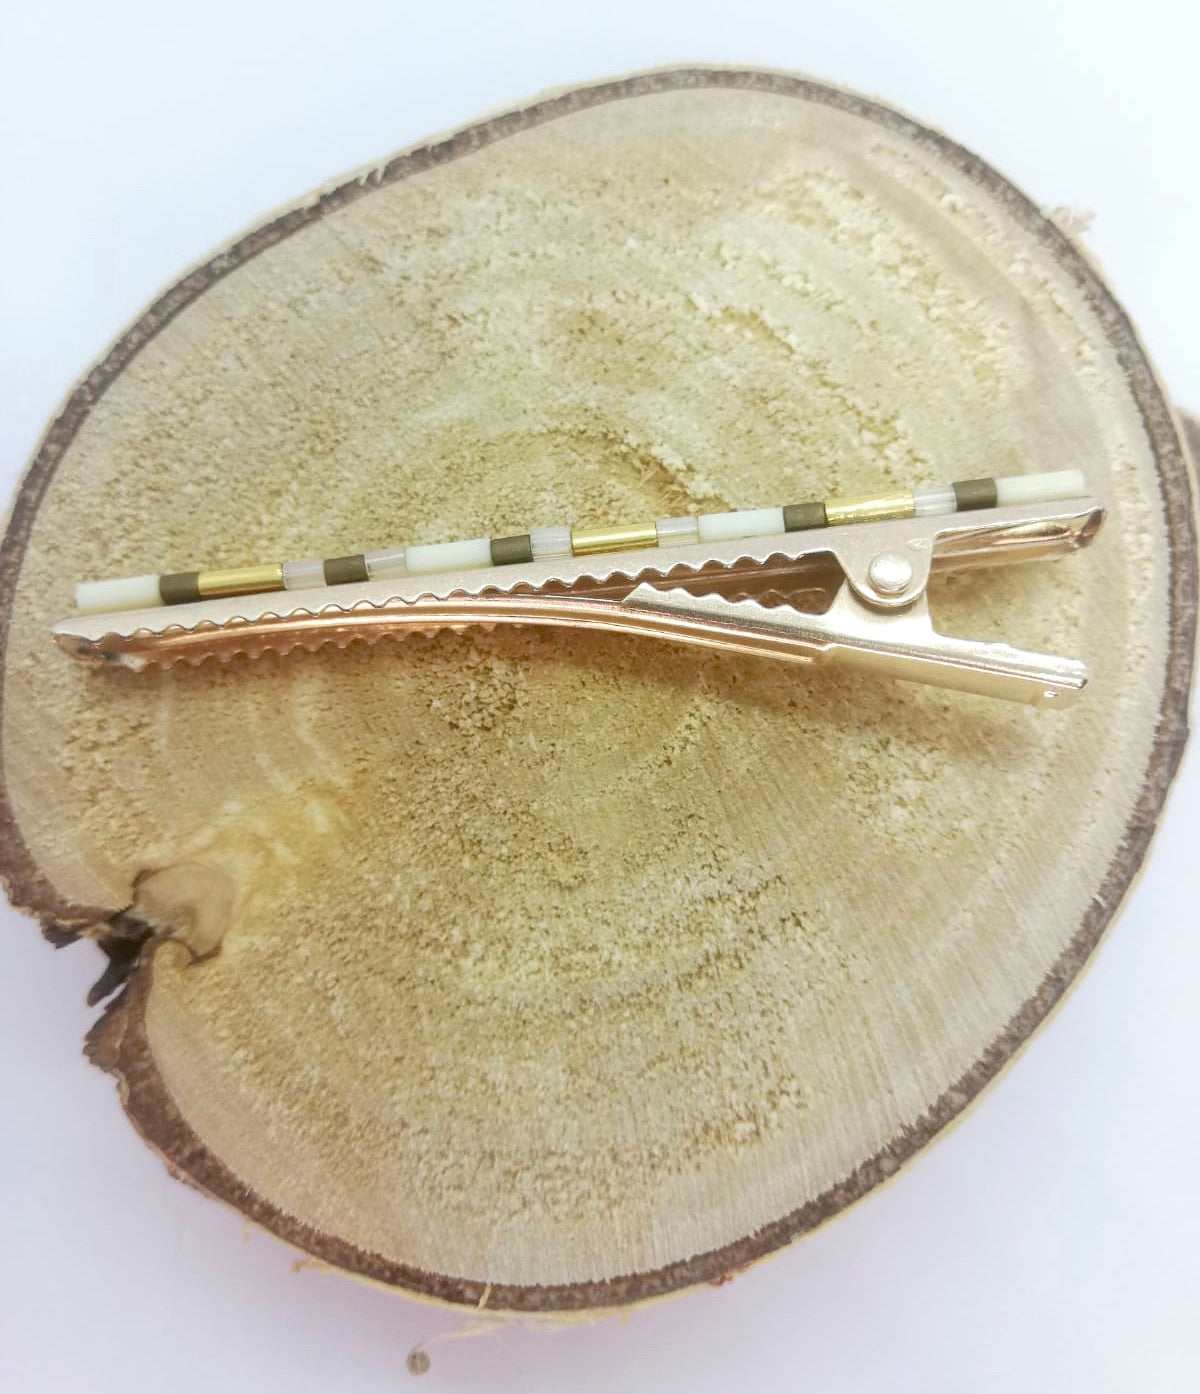 Pince crocodile en métal doré avec dent, posée sur un rond de bois et un fond blanc.